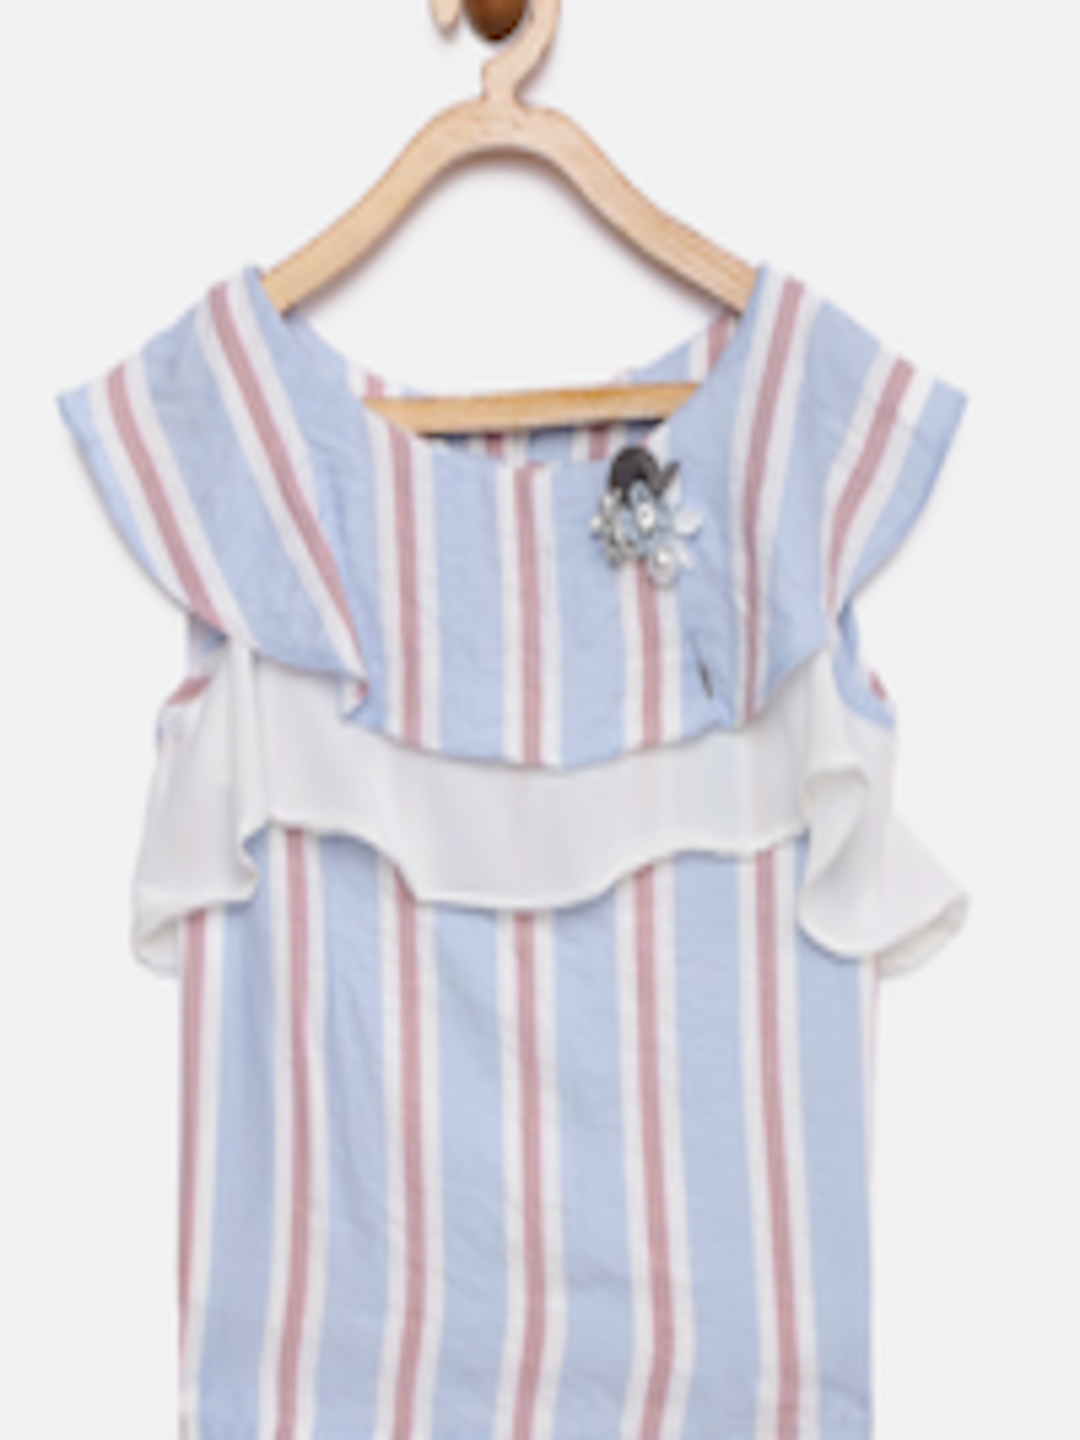 Buy Tiny Girl Girls Blue & White Striped Top - Tops for Girls 12271634 ...